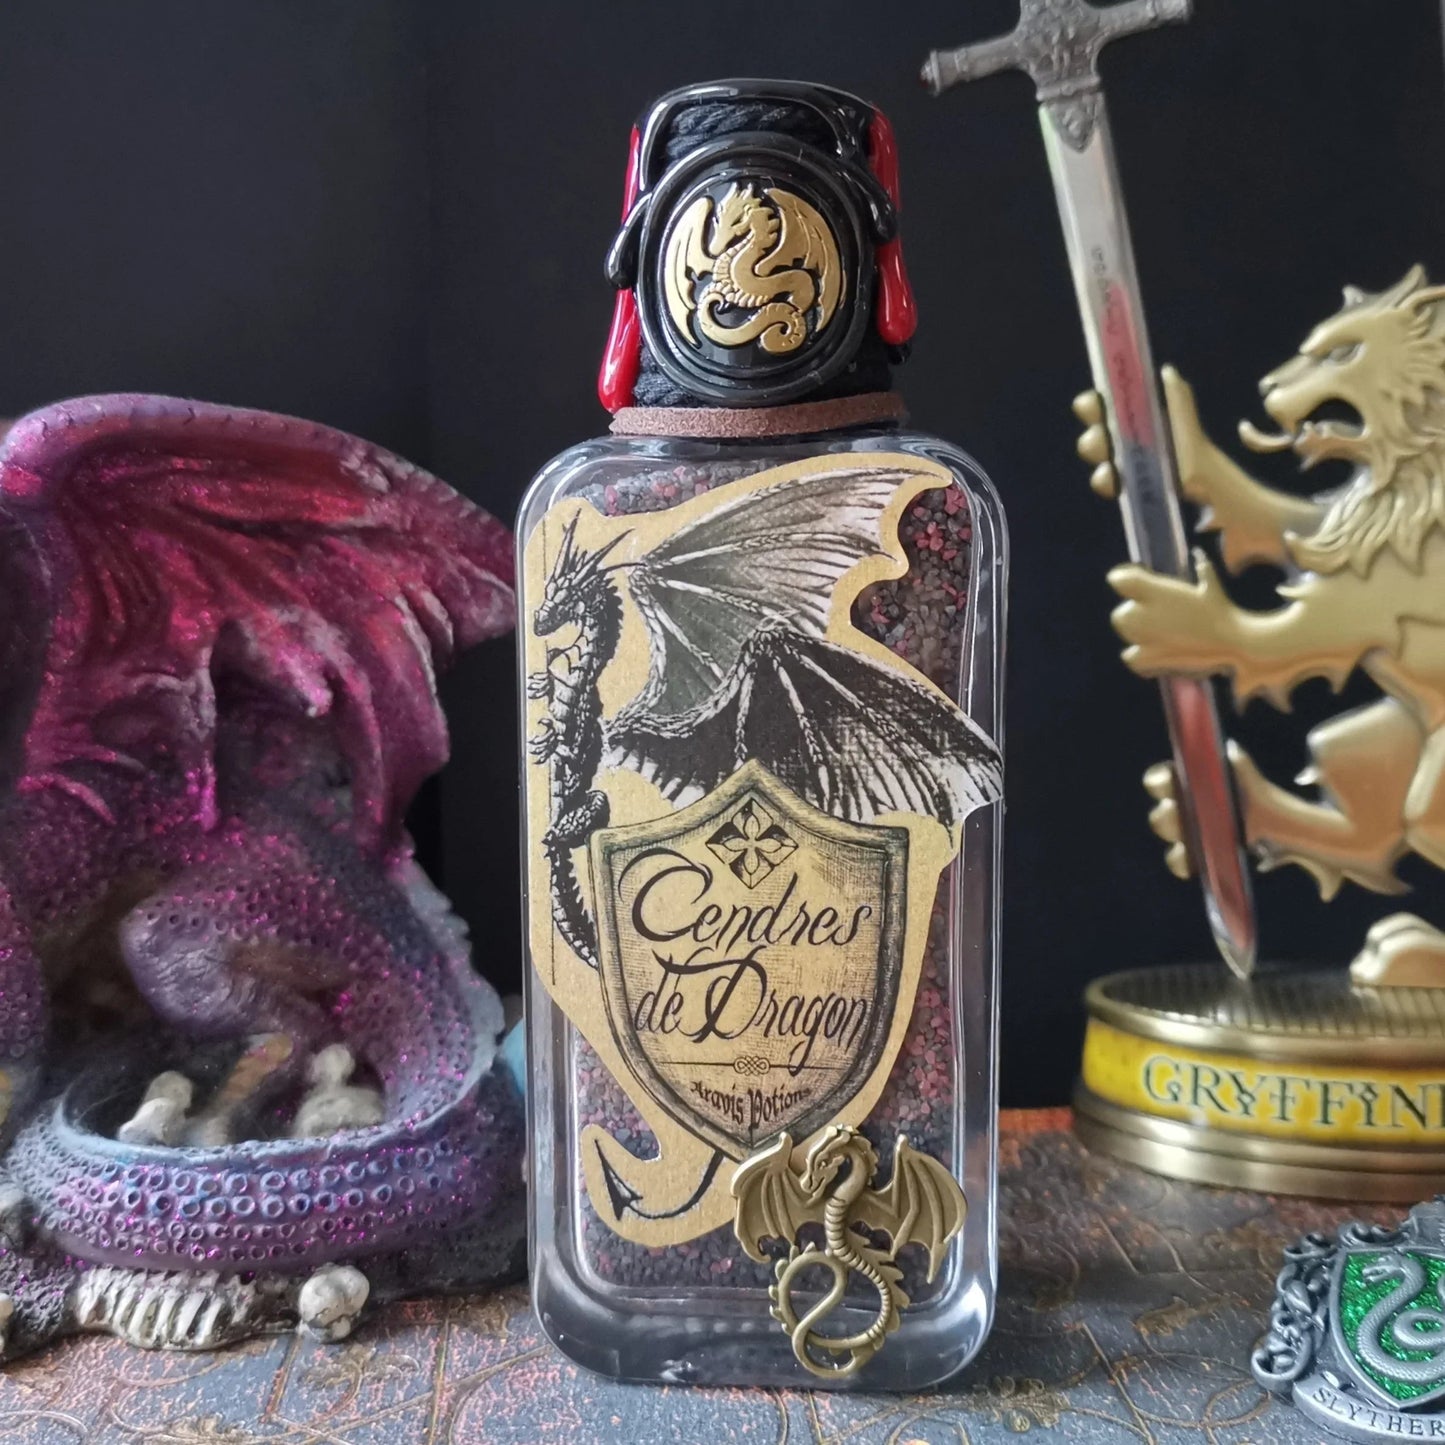 Cendres de Dragon Aravis Potions Apothecary Harry Potter